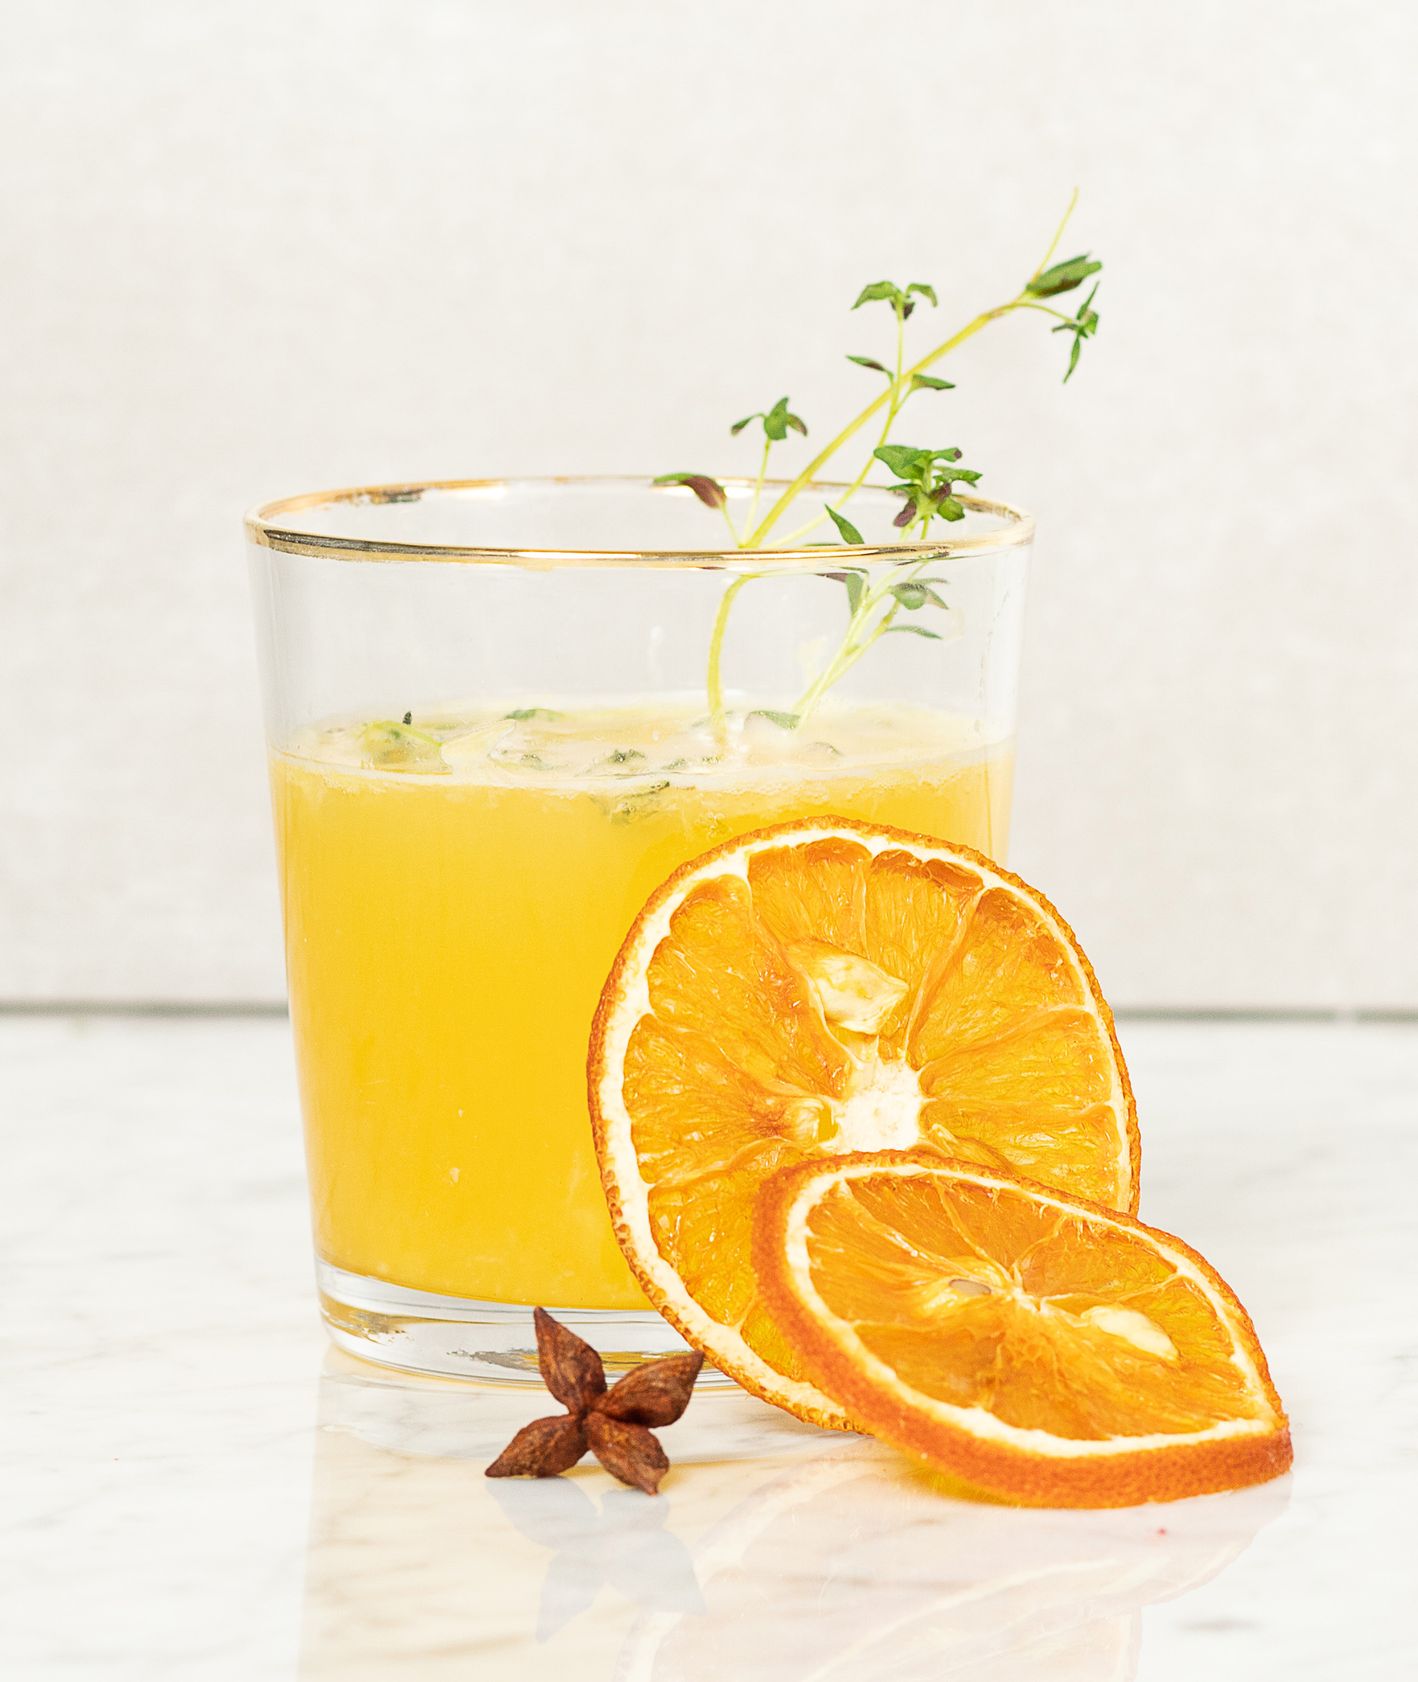 zdrowy napój owocowy napój pomarańczowy z miodem